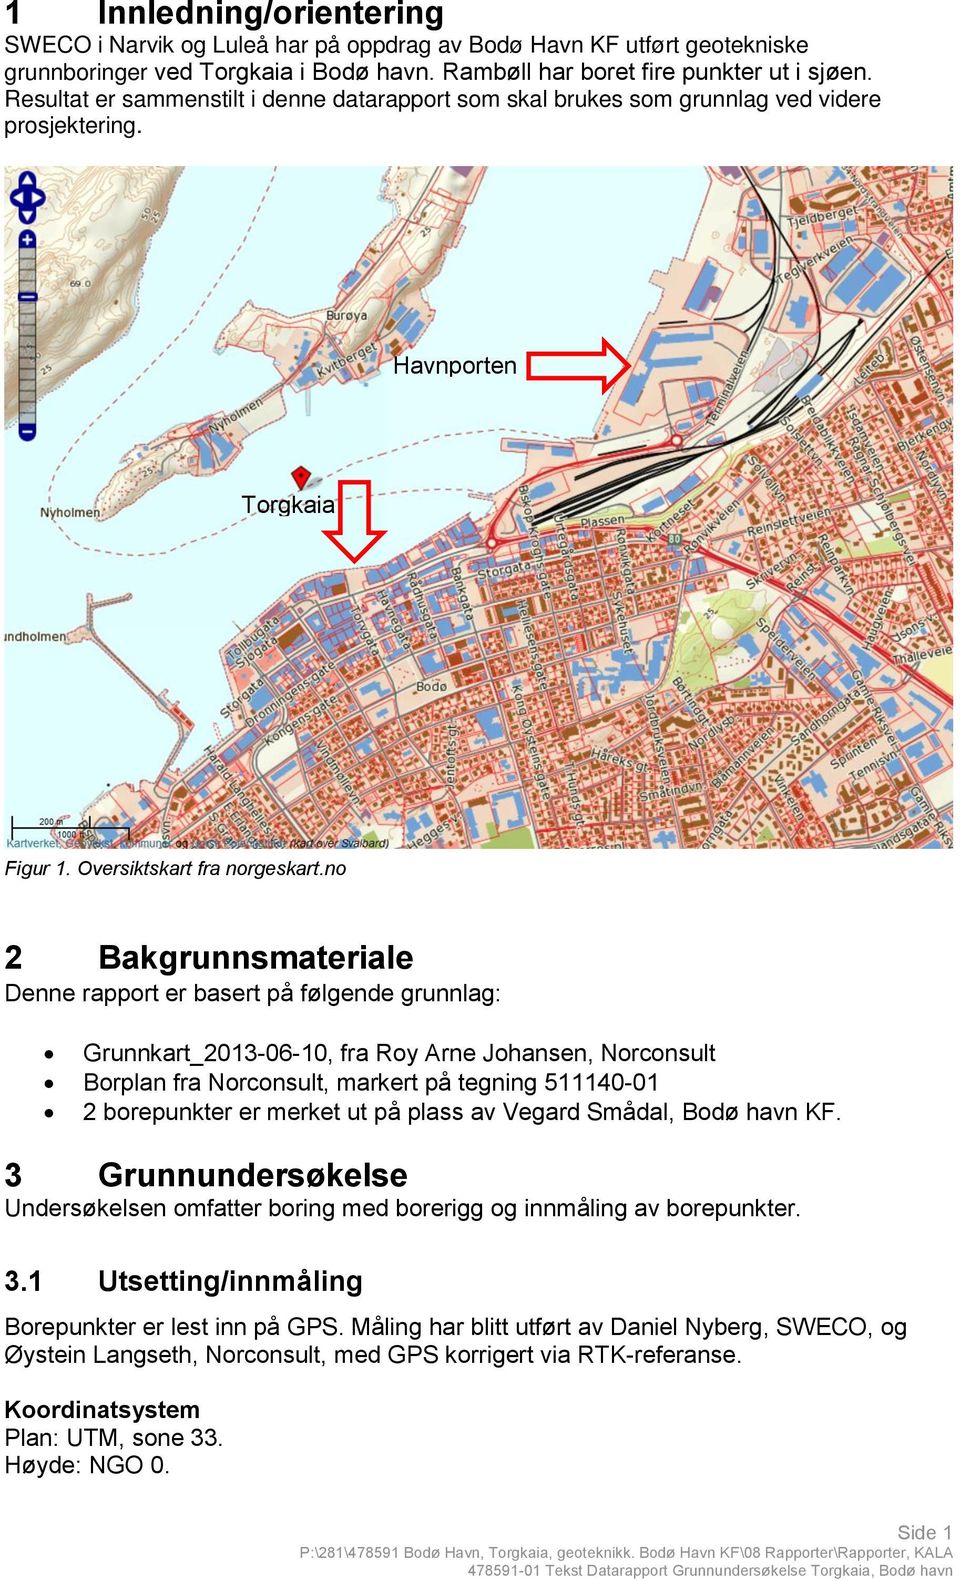 no 2 Bakgrunnsmateriale Denne rapport er basert på følgende grunnlag: Grunnkart_2013-06-10, fra Roy Arne Johansen, Norconsult Borplan fra Norconsult, markert på tegning 511140-01 2 borepunkter er